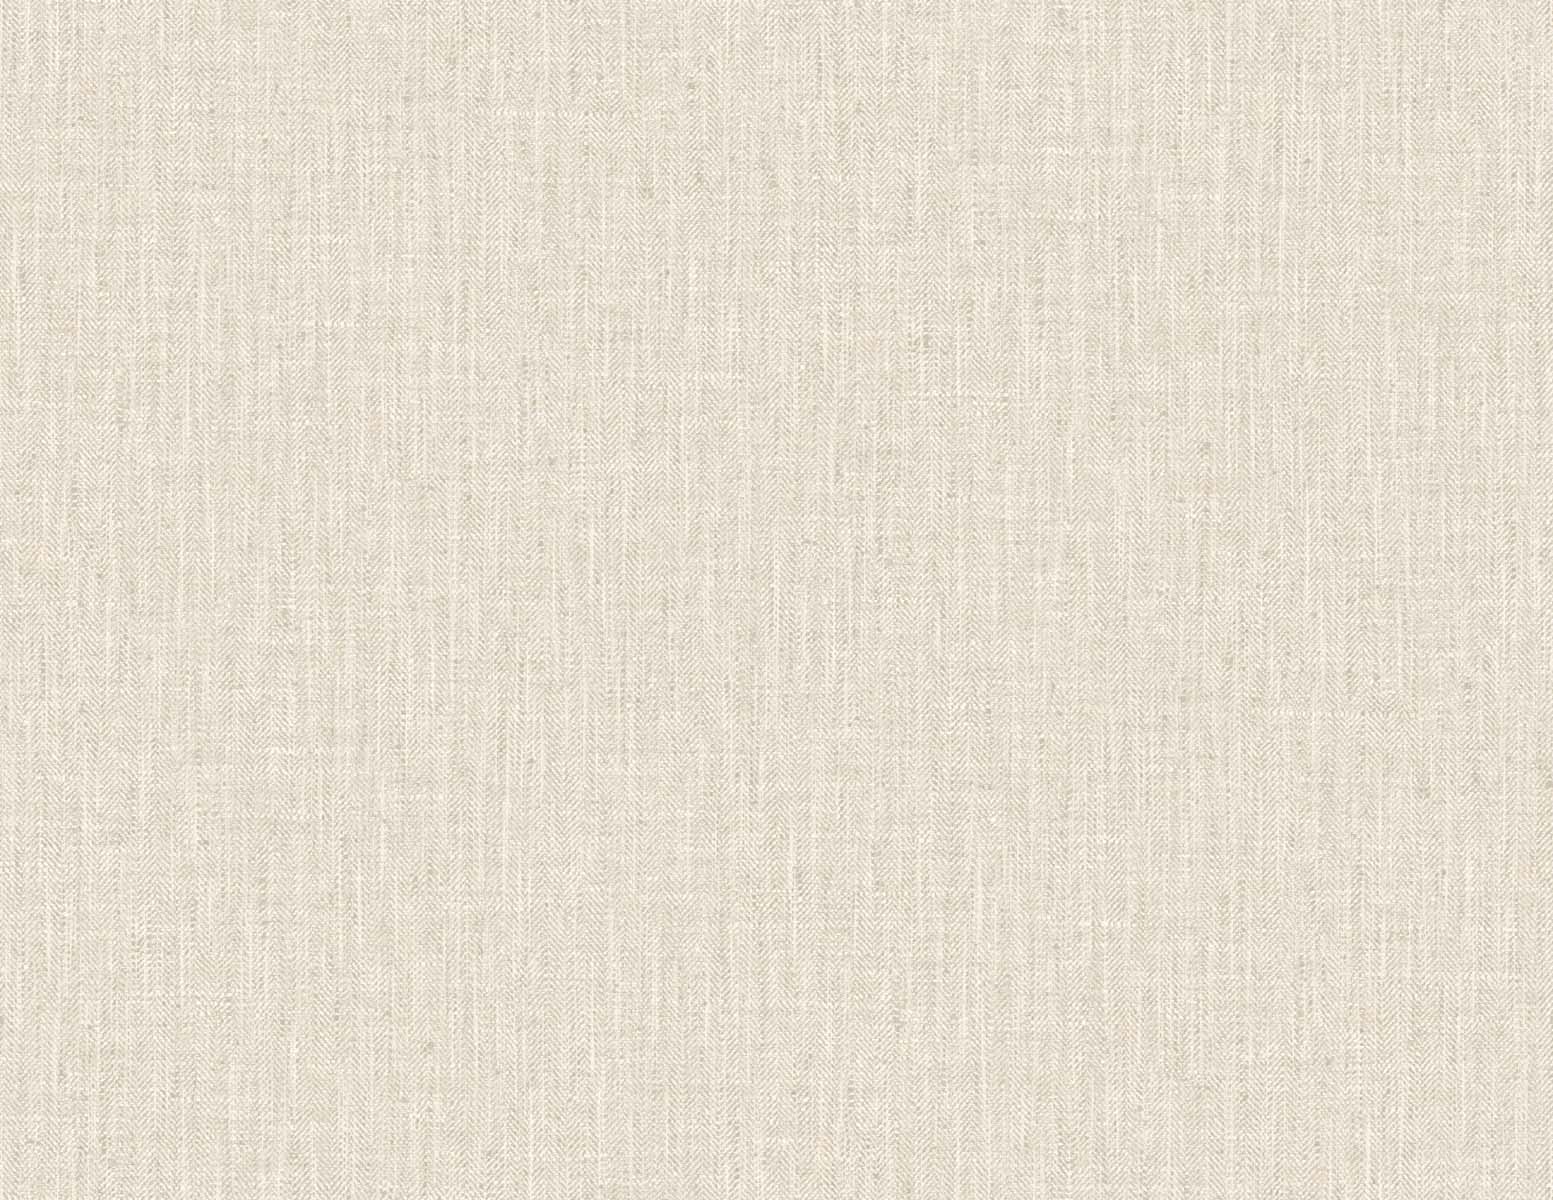 DuPont TG60018 Tedlar Textures Tweed Embossed Vinyl  Wallpaper Dried Wheat